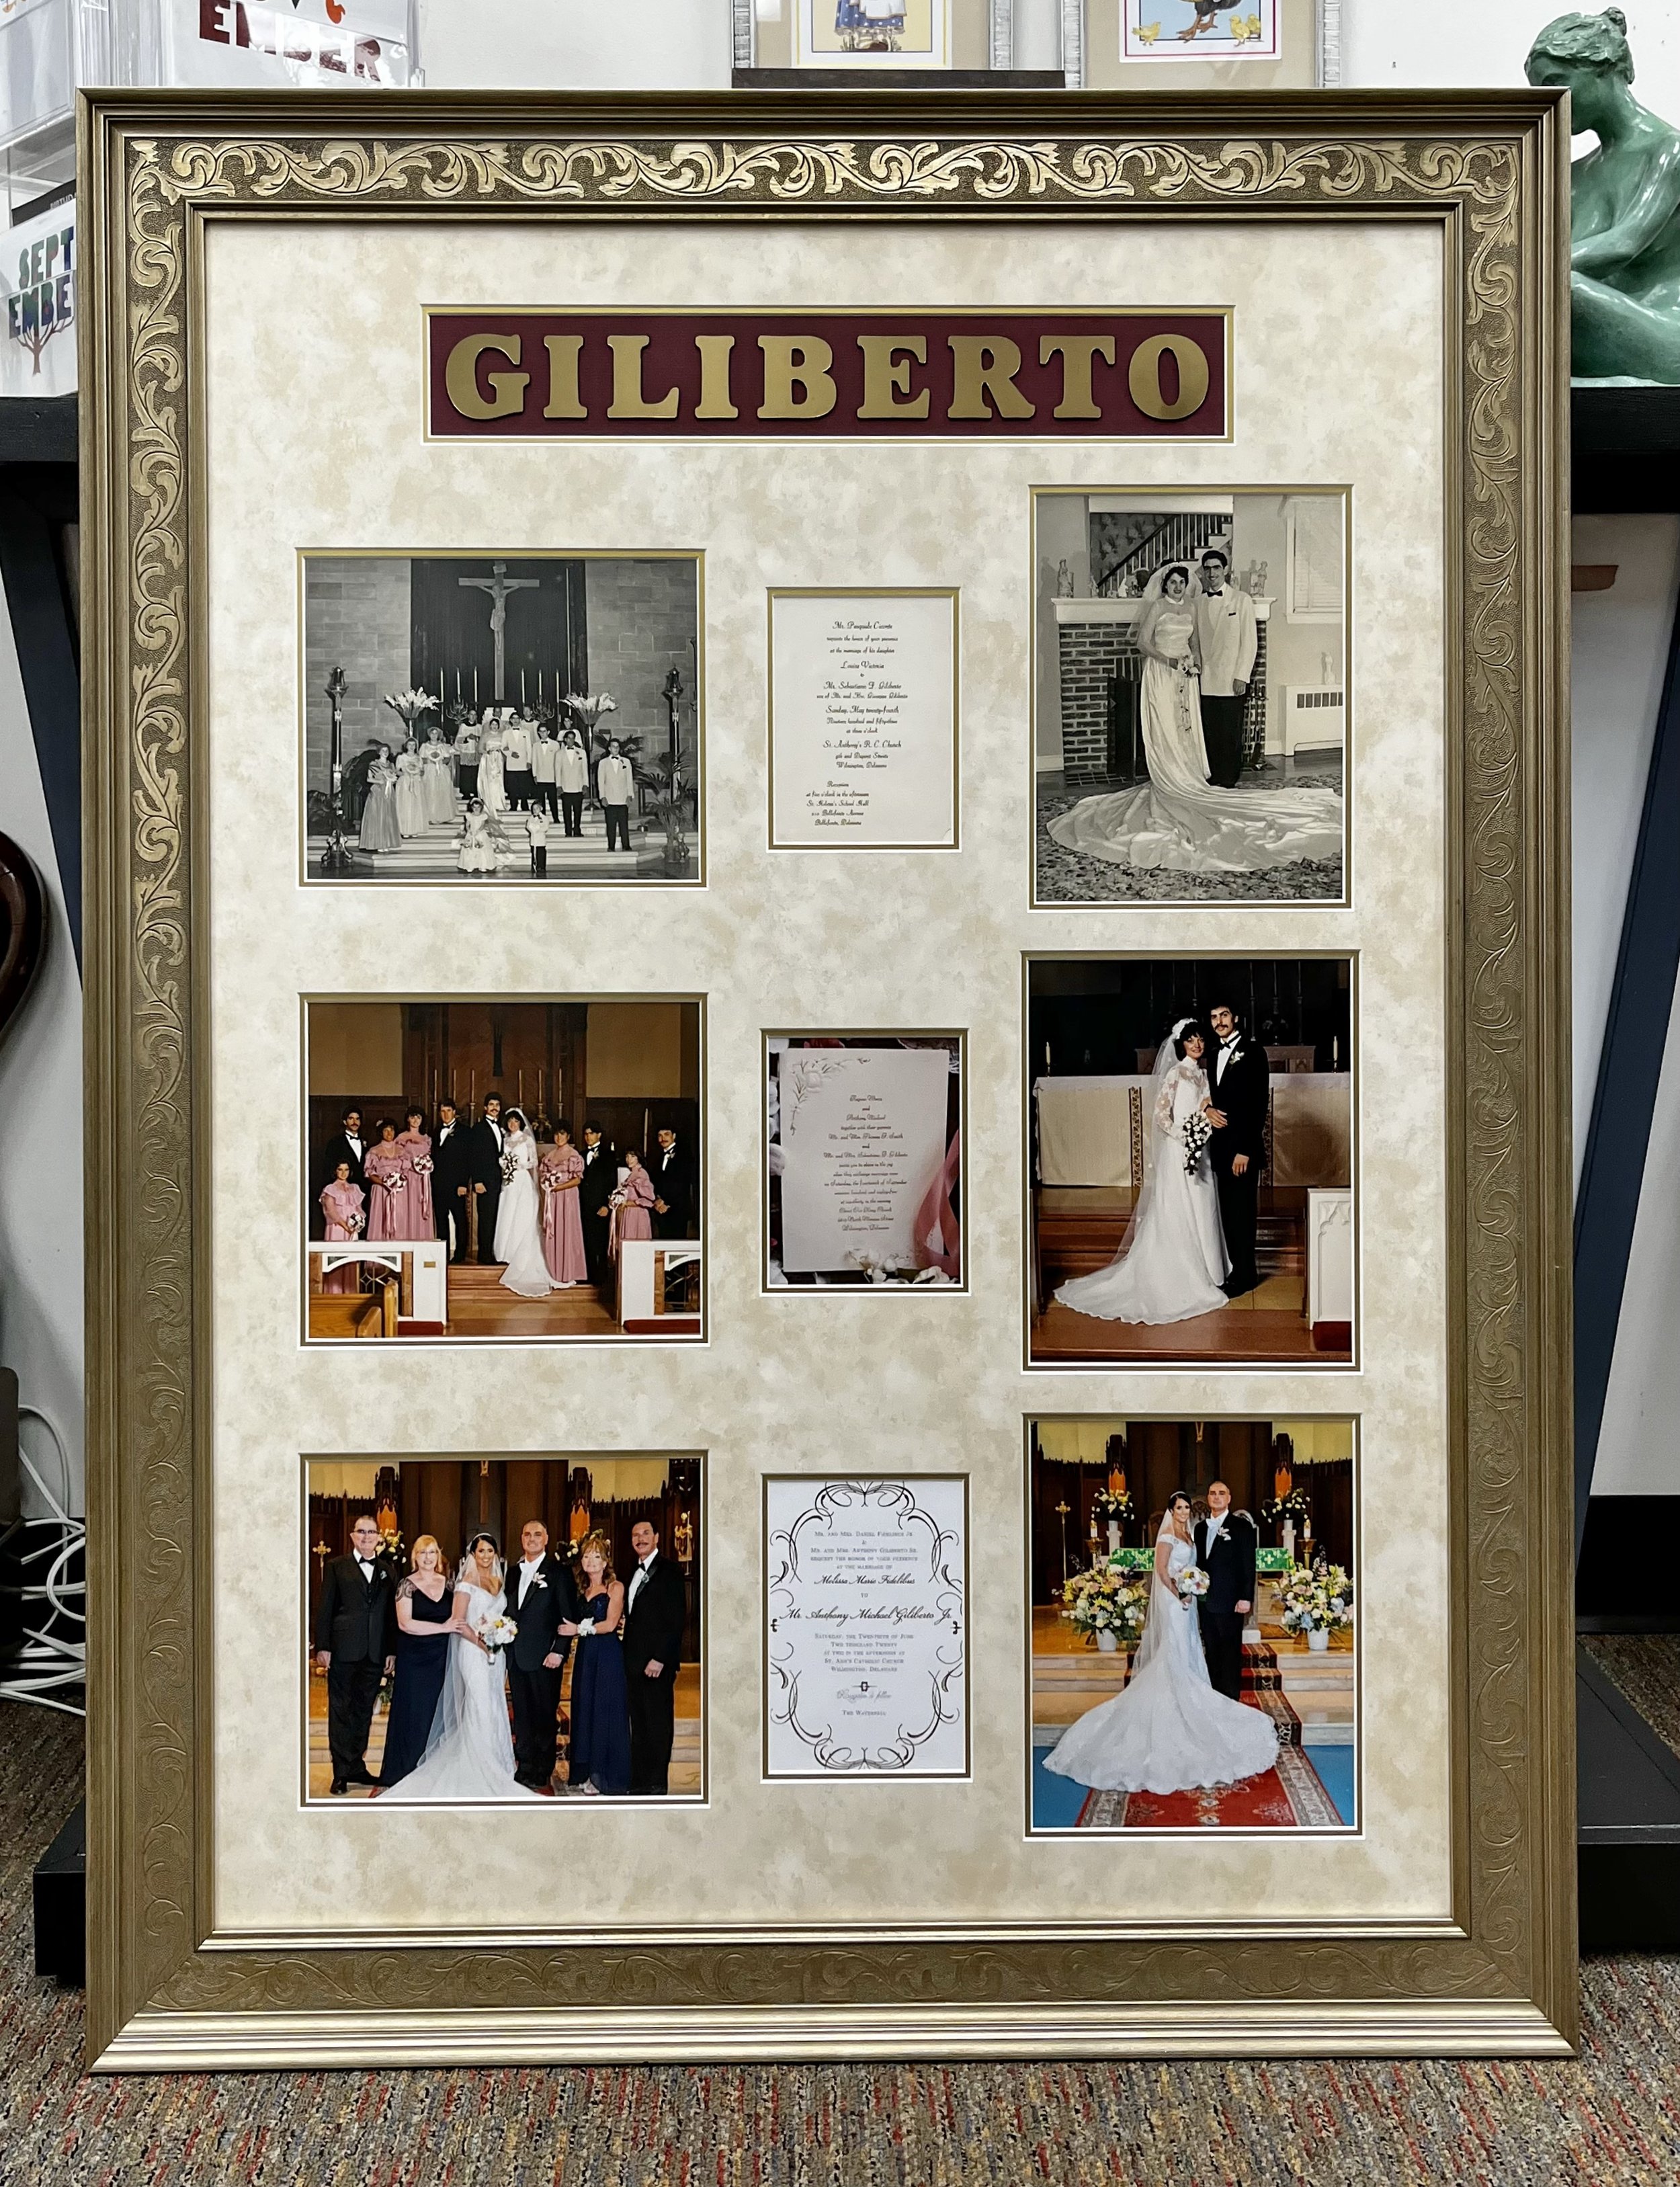 Giliberto Weddings